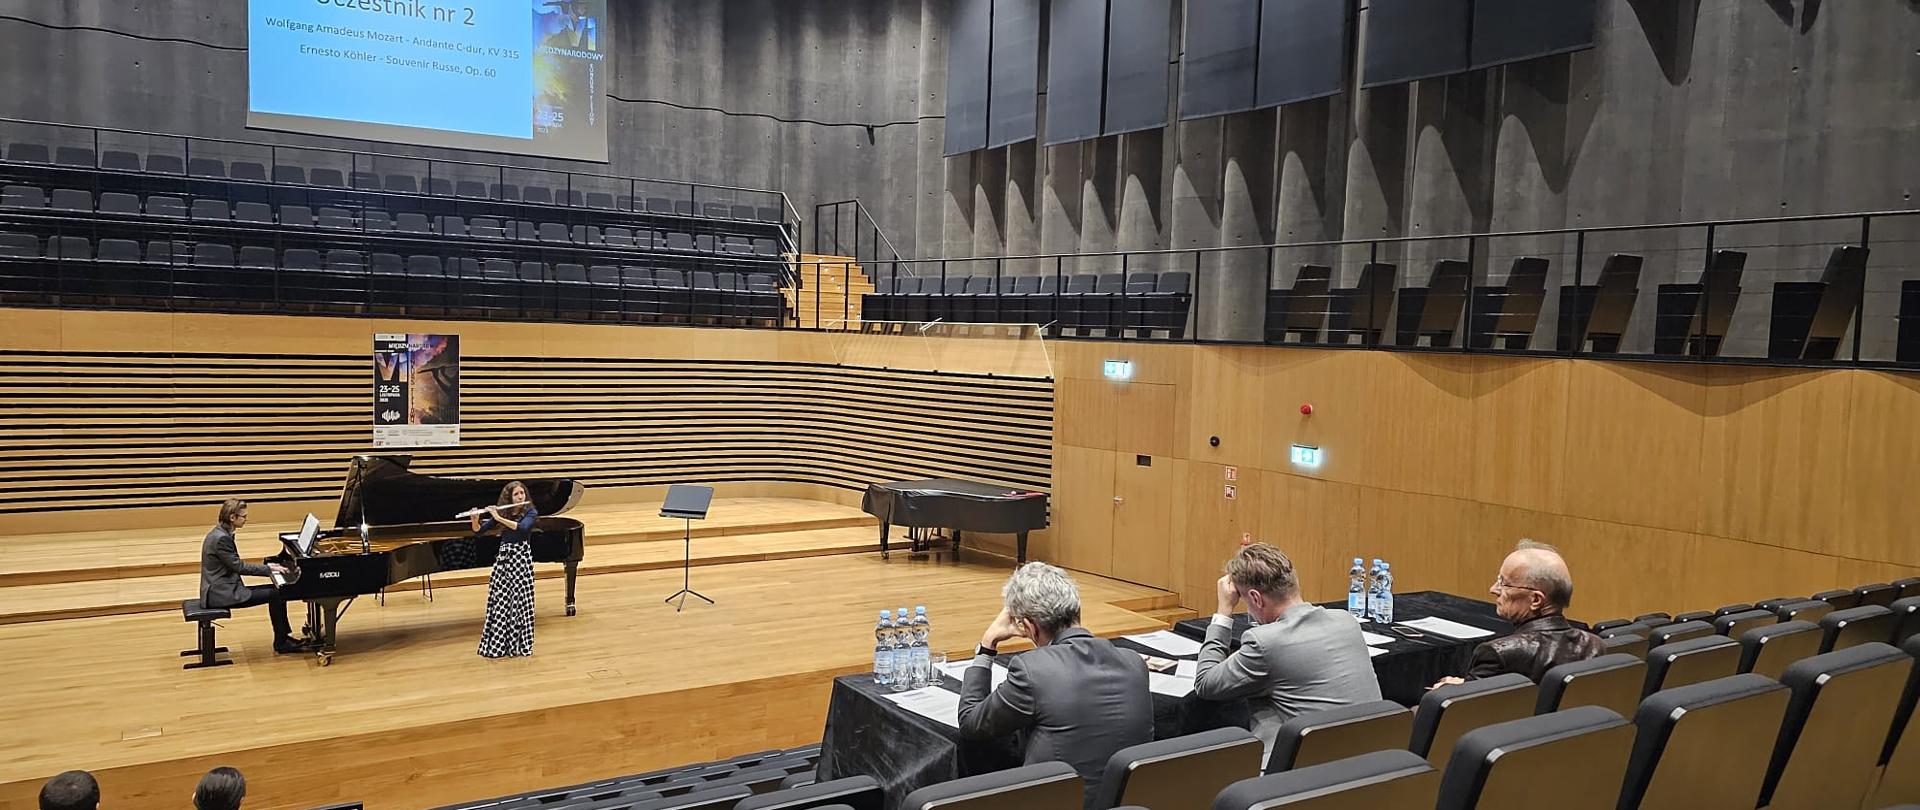 Nastolatka stojąc na środku estrady sali koncertowej PSM gra na flecie poprzecznym, za nią na fortepianie gra mężczyzna. Z przodu widać od tyłu widownię oraz siedzące przy stole Jury.